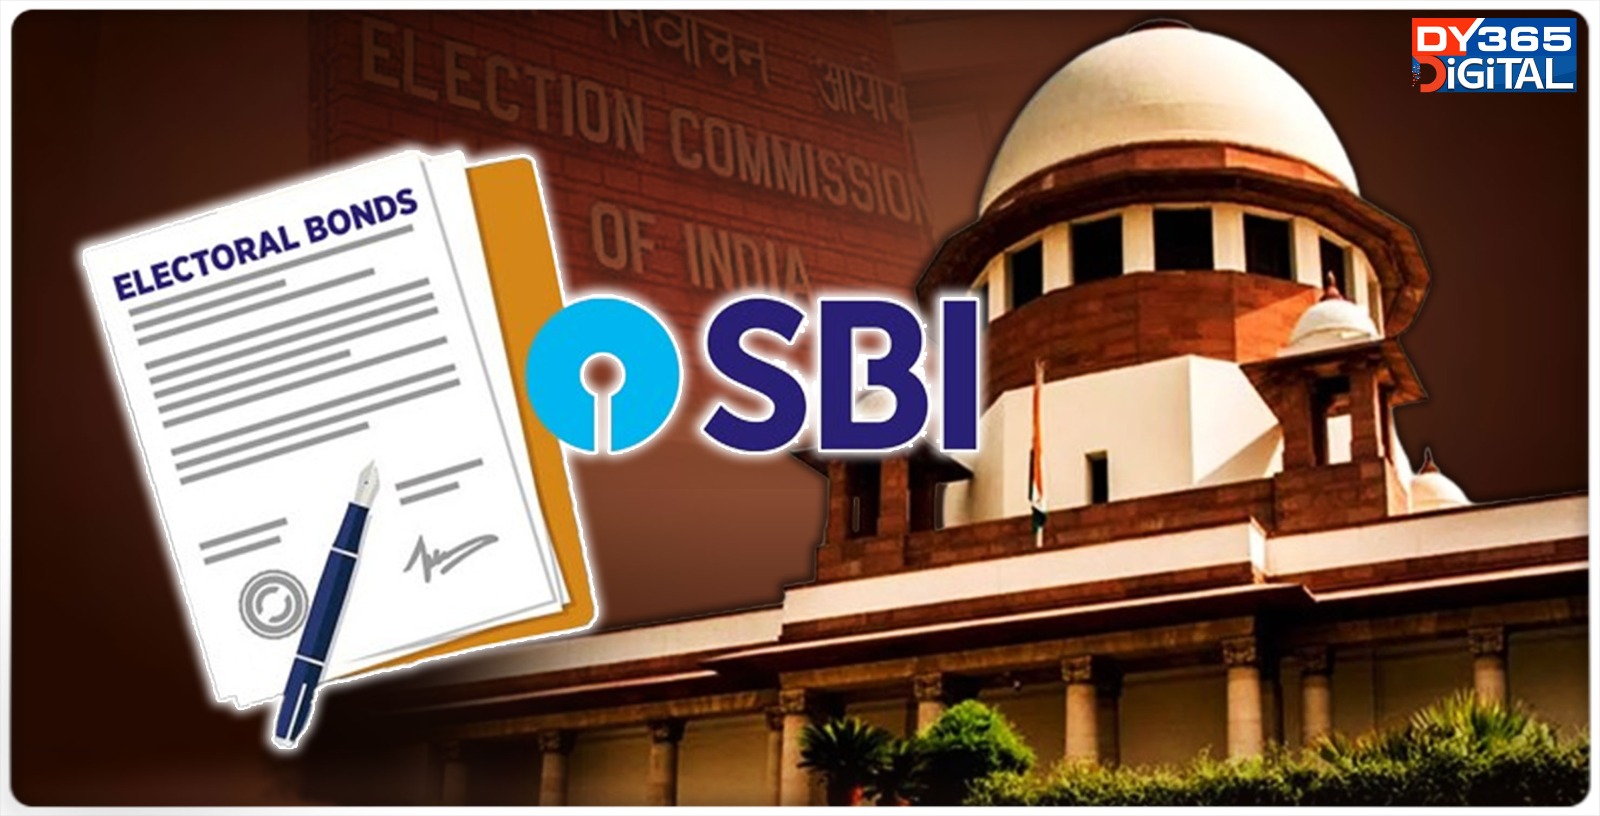 -sbi-files-compliance-affidavit-in-sc-after-sending-electoral-bonds-details-to-e